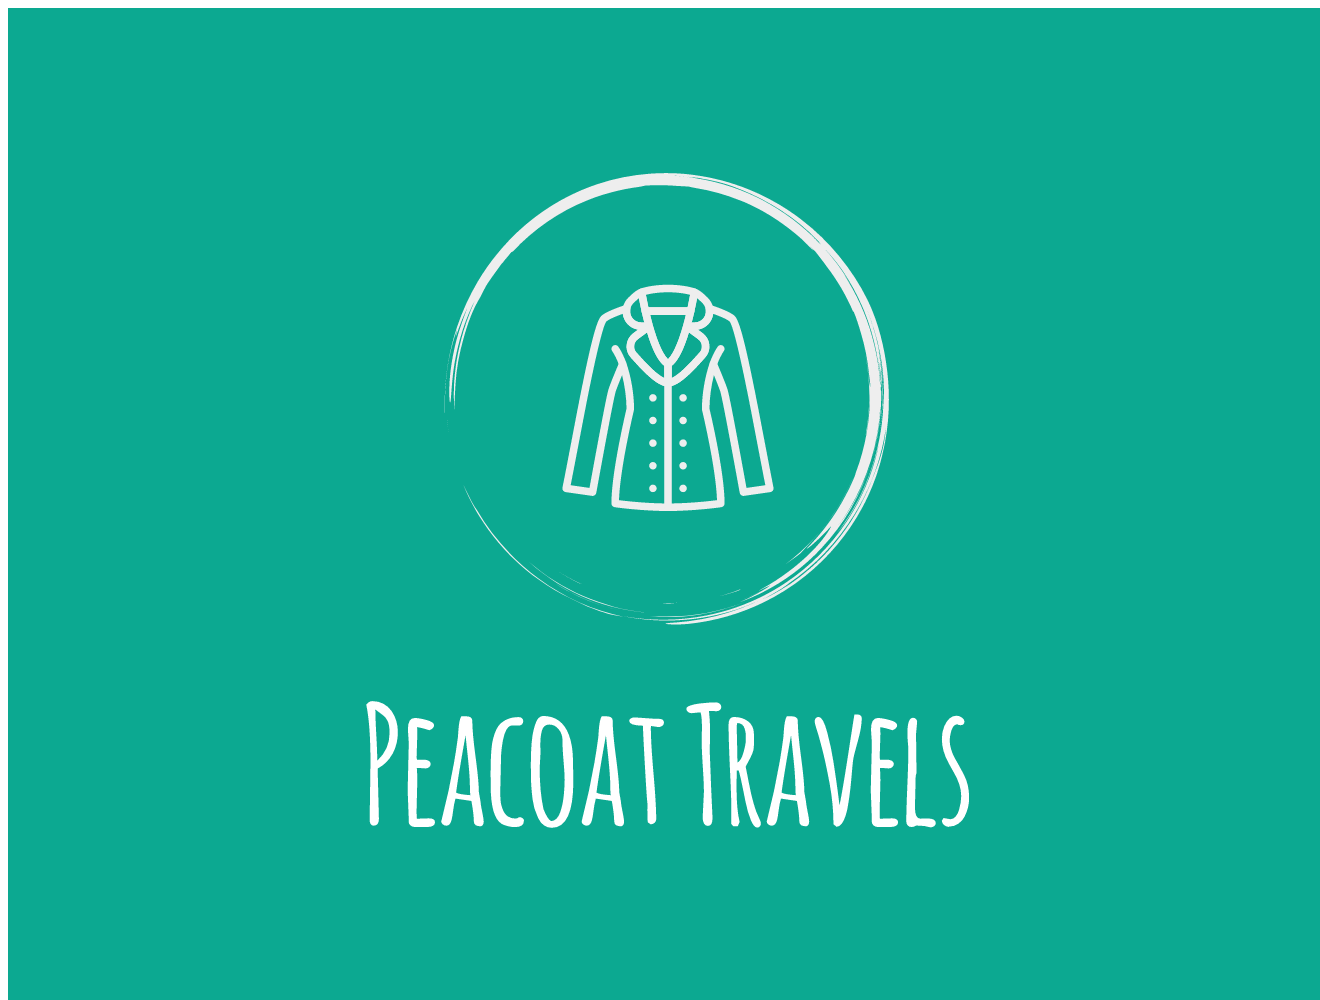 Peacoat Travels